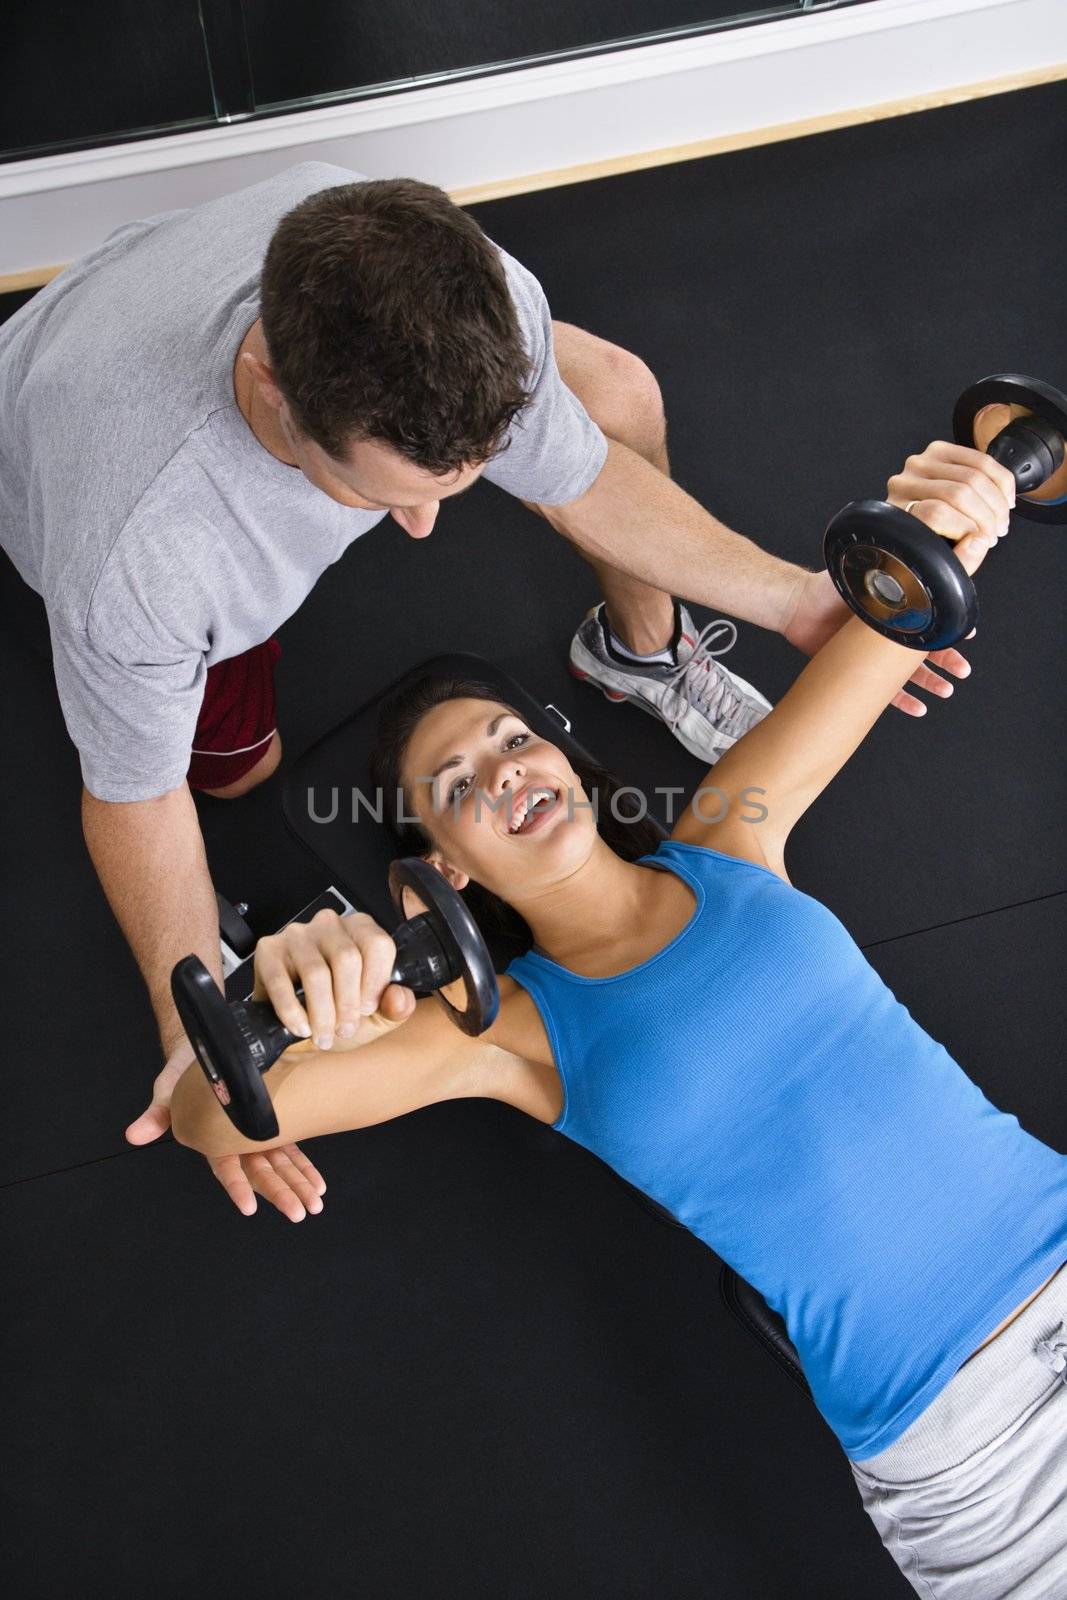 Man assisting woman lifting weights at gym.